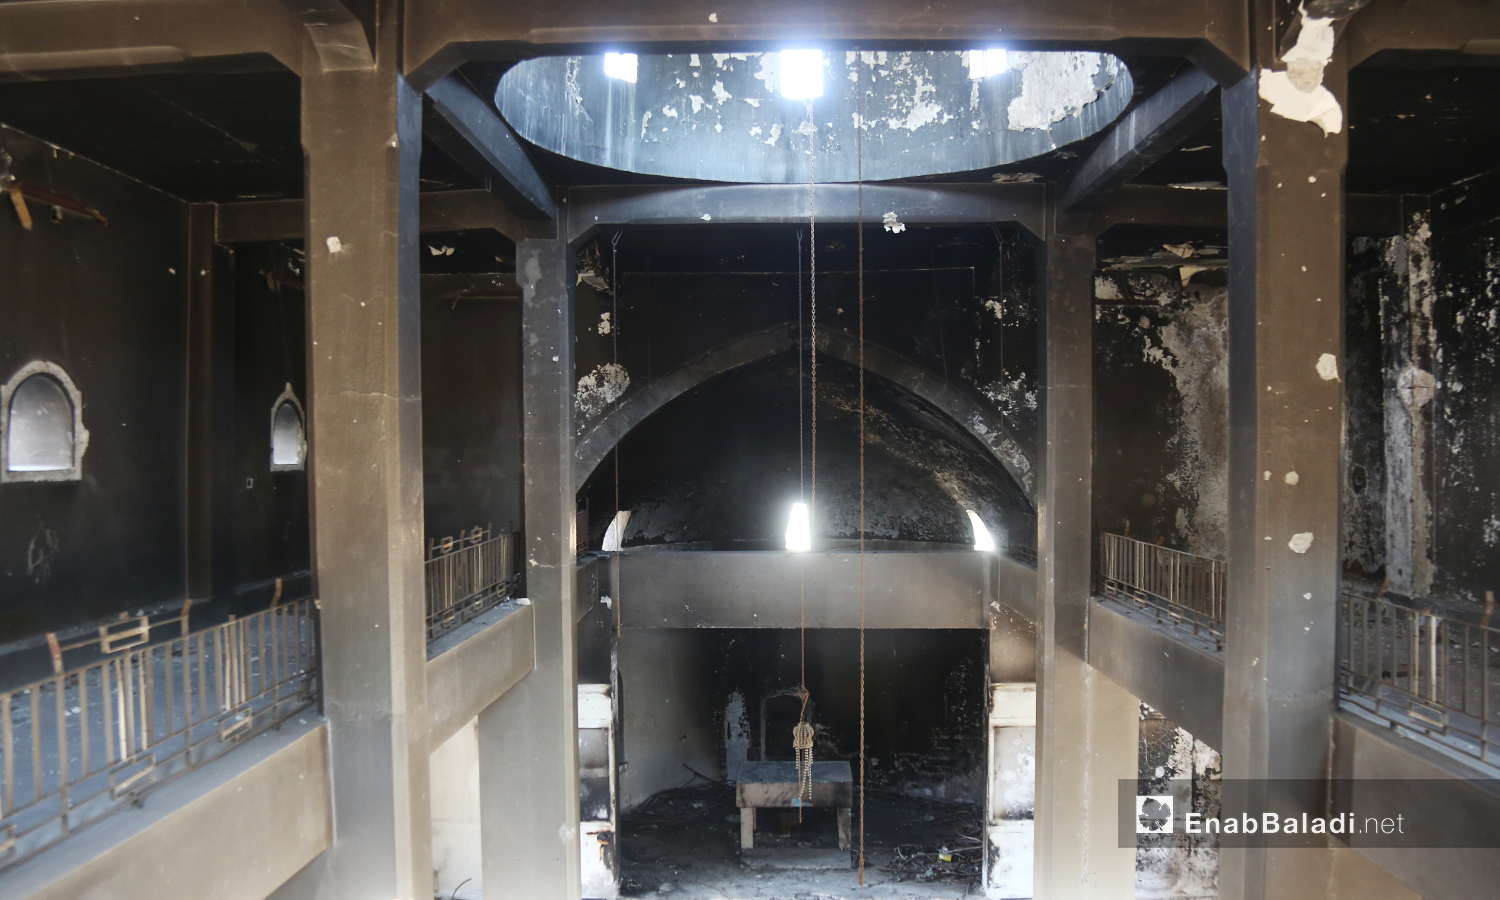 القاعة الداخلية في كنيسة "مار جرجس" تعاني من آثار الحرق نتيجة القصف ولم ترمم بعد  - تموز 2020 (عنب بلدي)